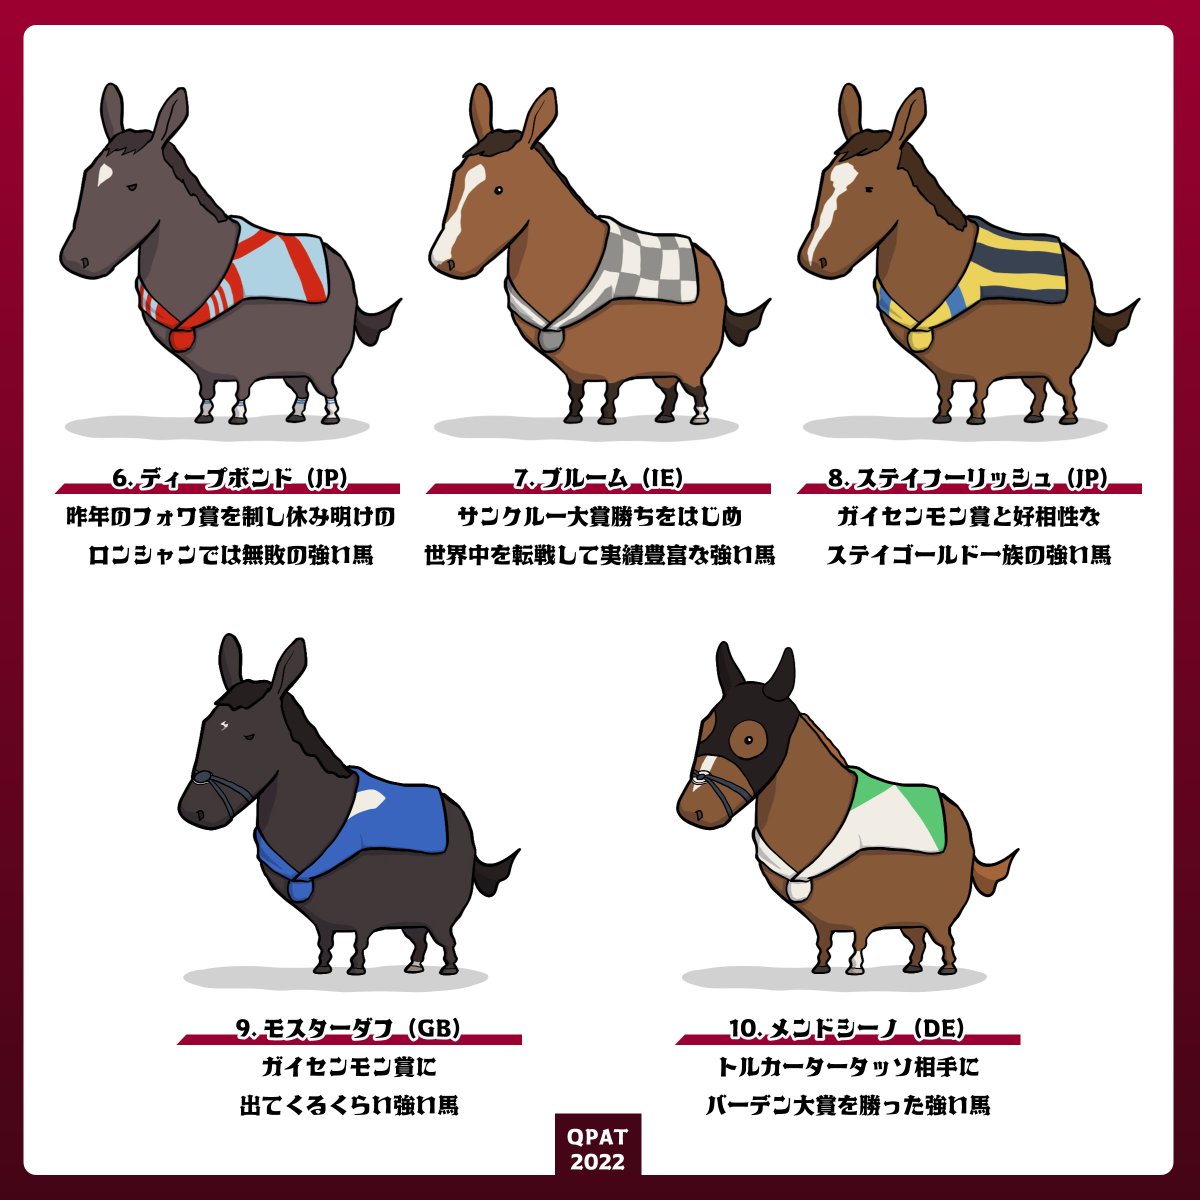 凱旋門賞🇫🇷出走各馬のビジュアルと特徴をまとめました❢

タイトルホルダー、ドウデュース、ディープボンド、ステイフーリッシュの日本勢だけでなく、外国馬の情報も簡潔にまとめています。
(一覧化したことで出走馬のとある共通項も見えてきました⋯👀)

レース観戦のお供にどうぞ😊
#QPAT ※馬番順 